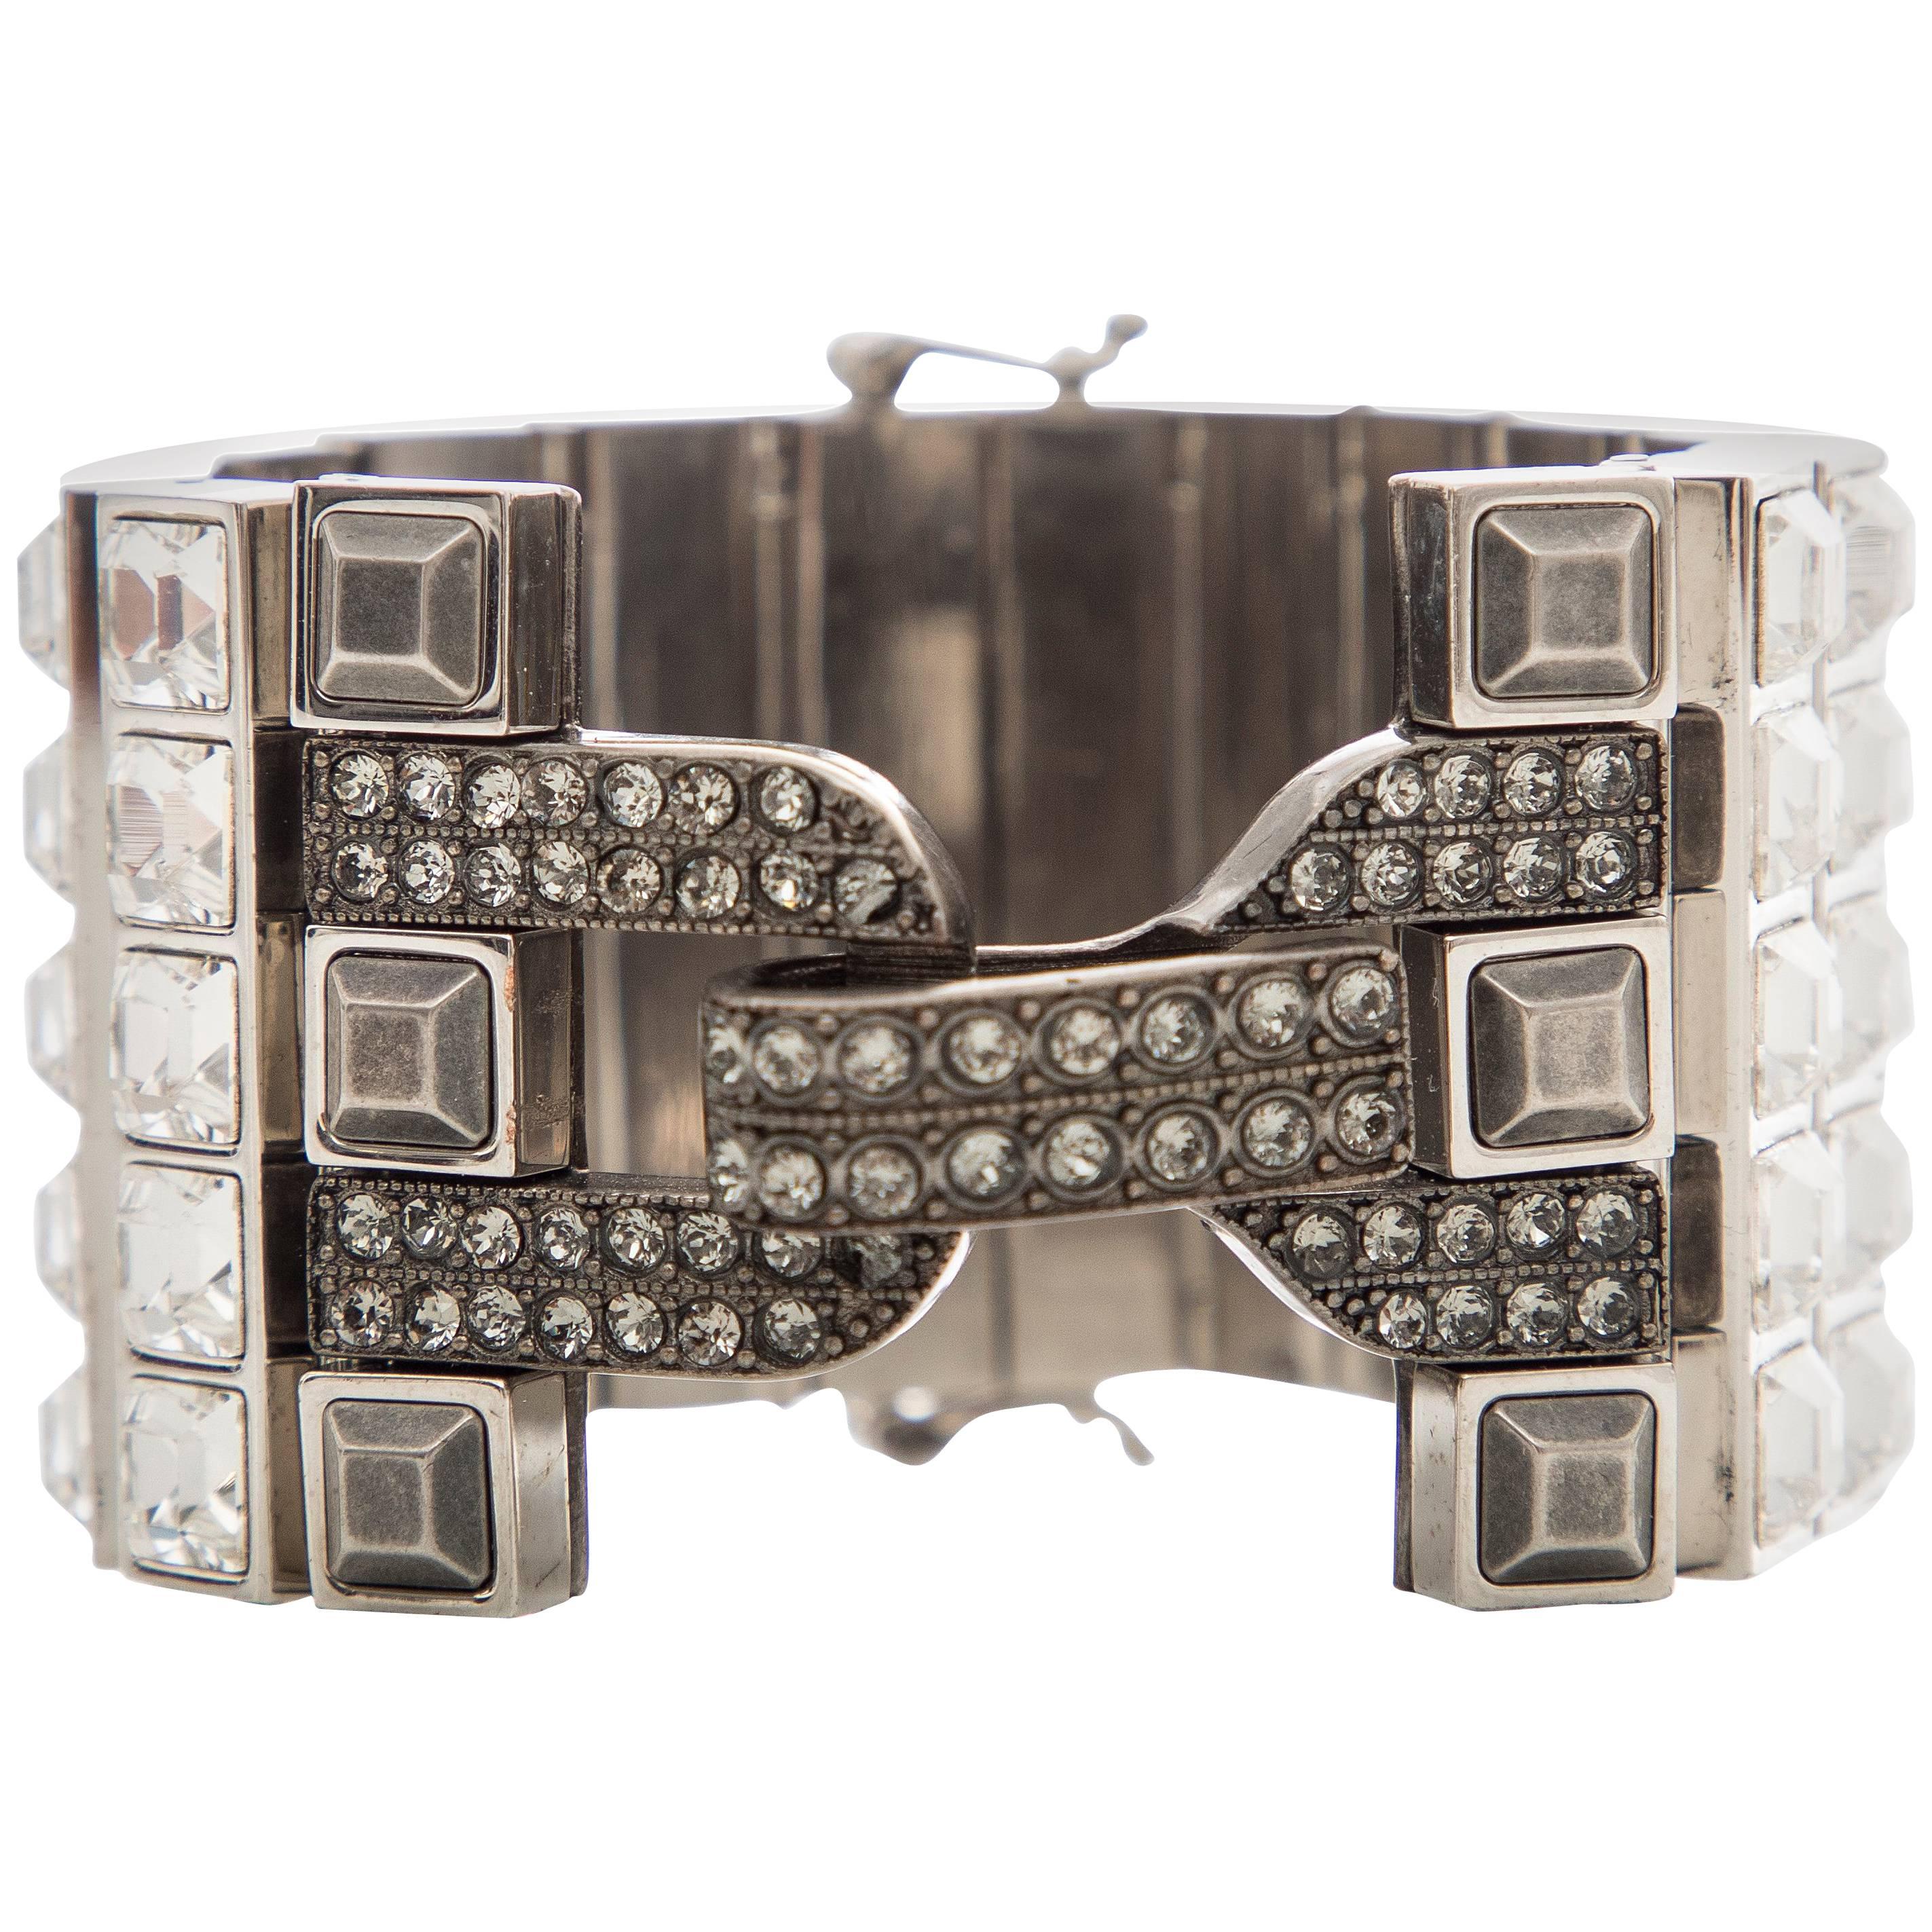 Alber Elbaz for Lanvin Faceted Crystal & Antique Stud Bracelet, Spring 2016 For Sale